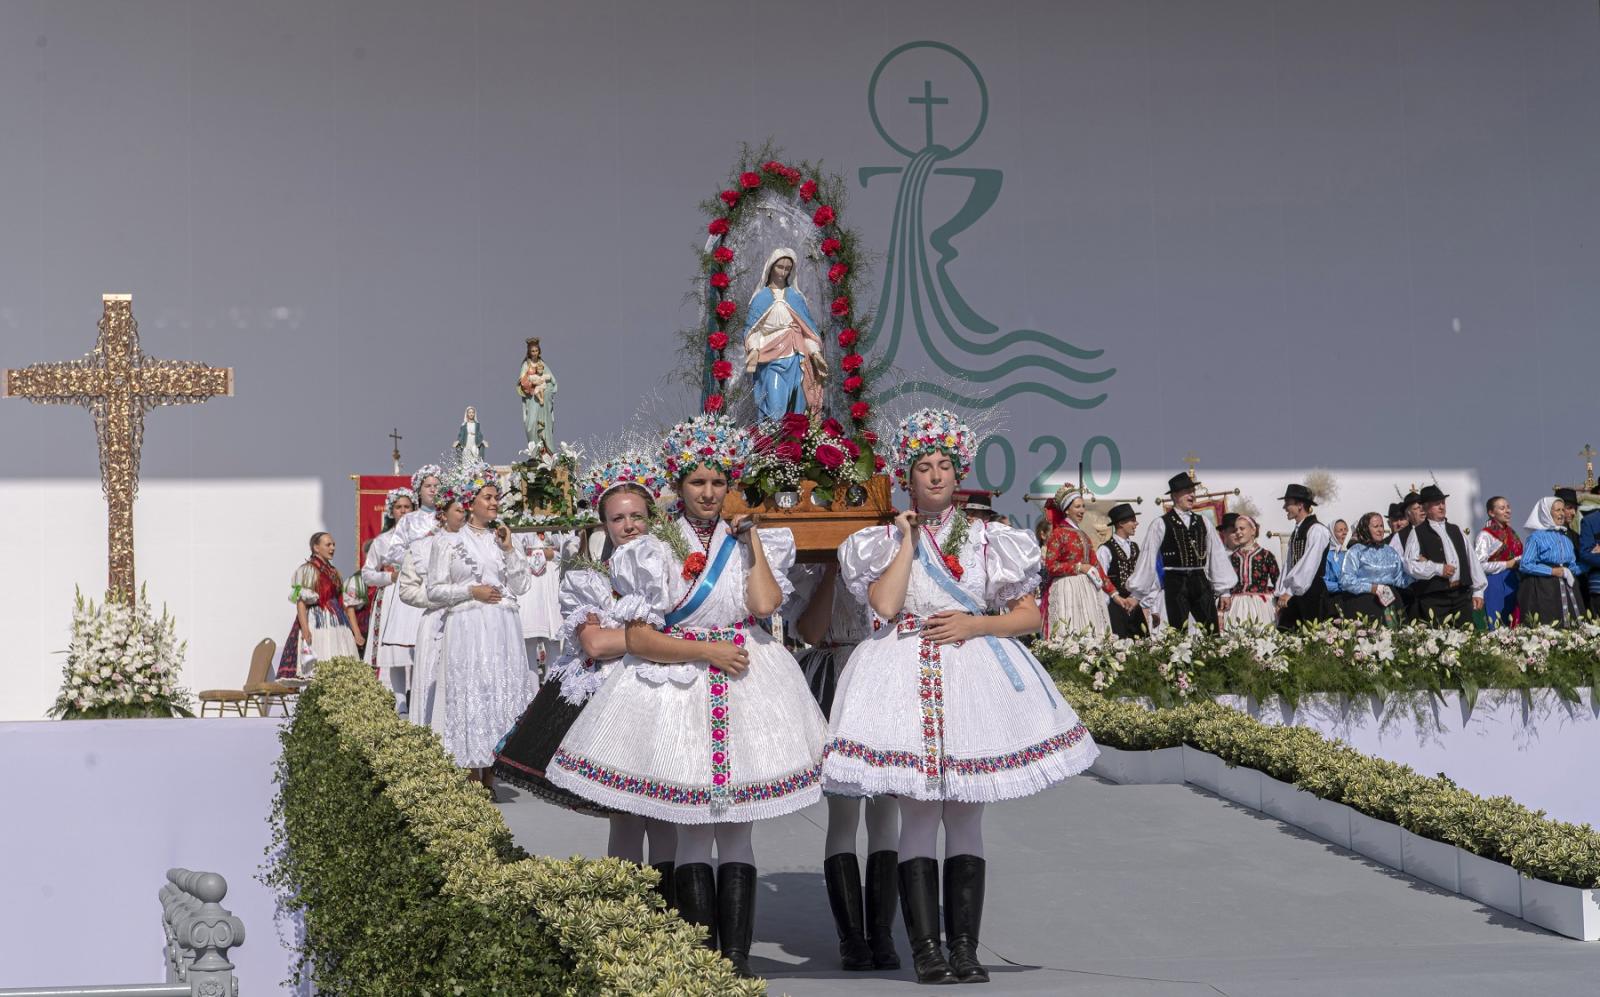 A Magyarország, Mária országa című előadás szereplői az 52. Nemzetközi Eucharisztikus Kongresszust megnyitó ünnepi szentmise előtt a Hősök terén (MTI/Szigetváry Zsolt)